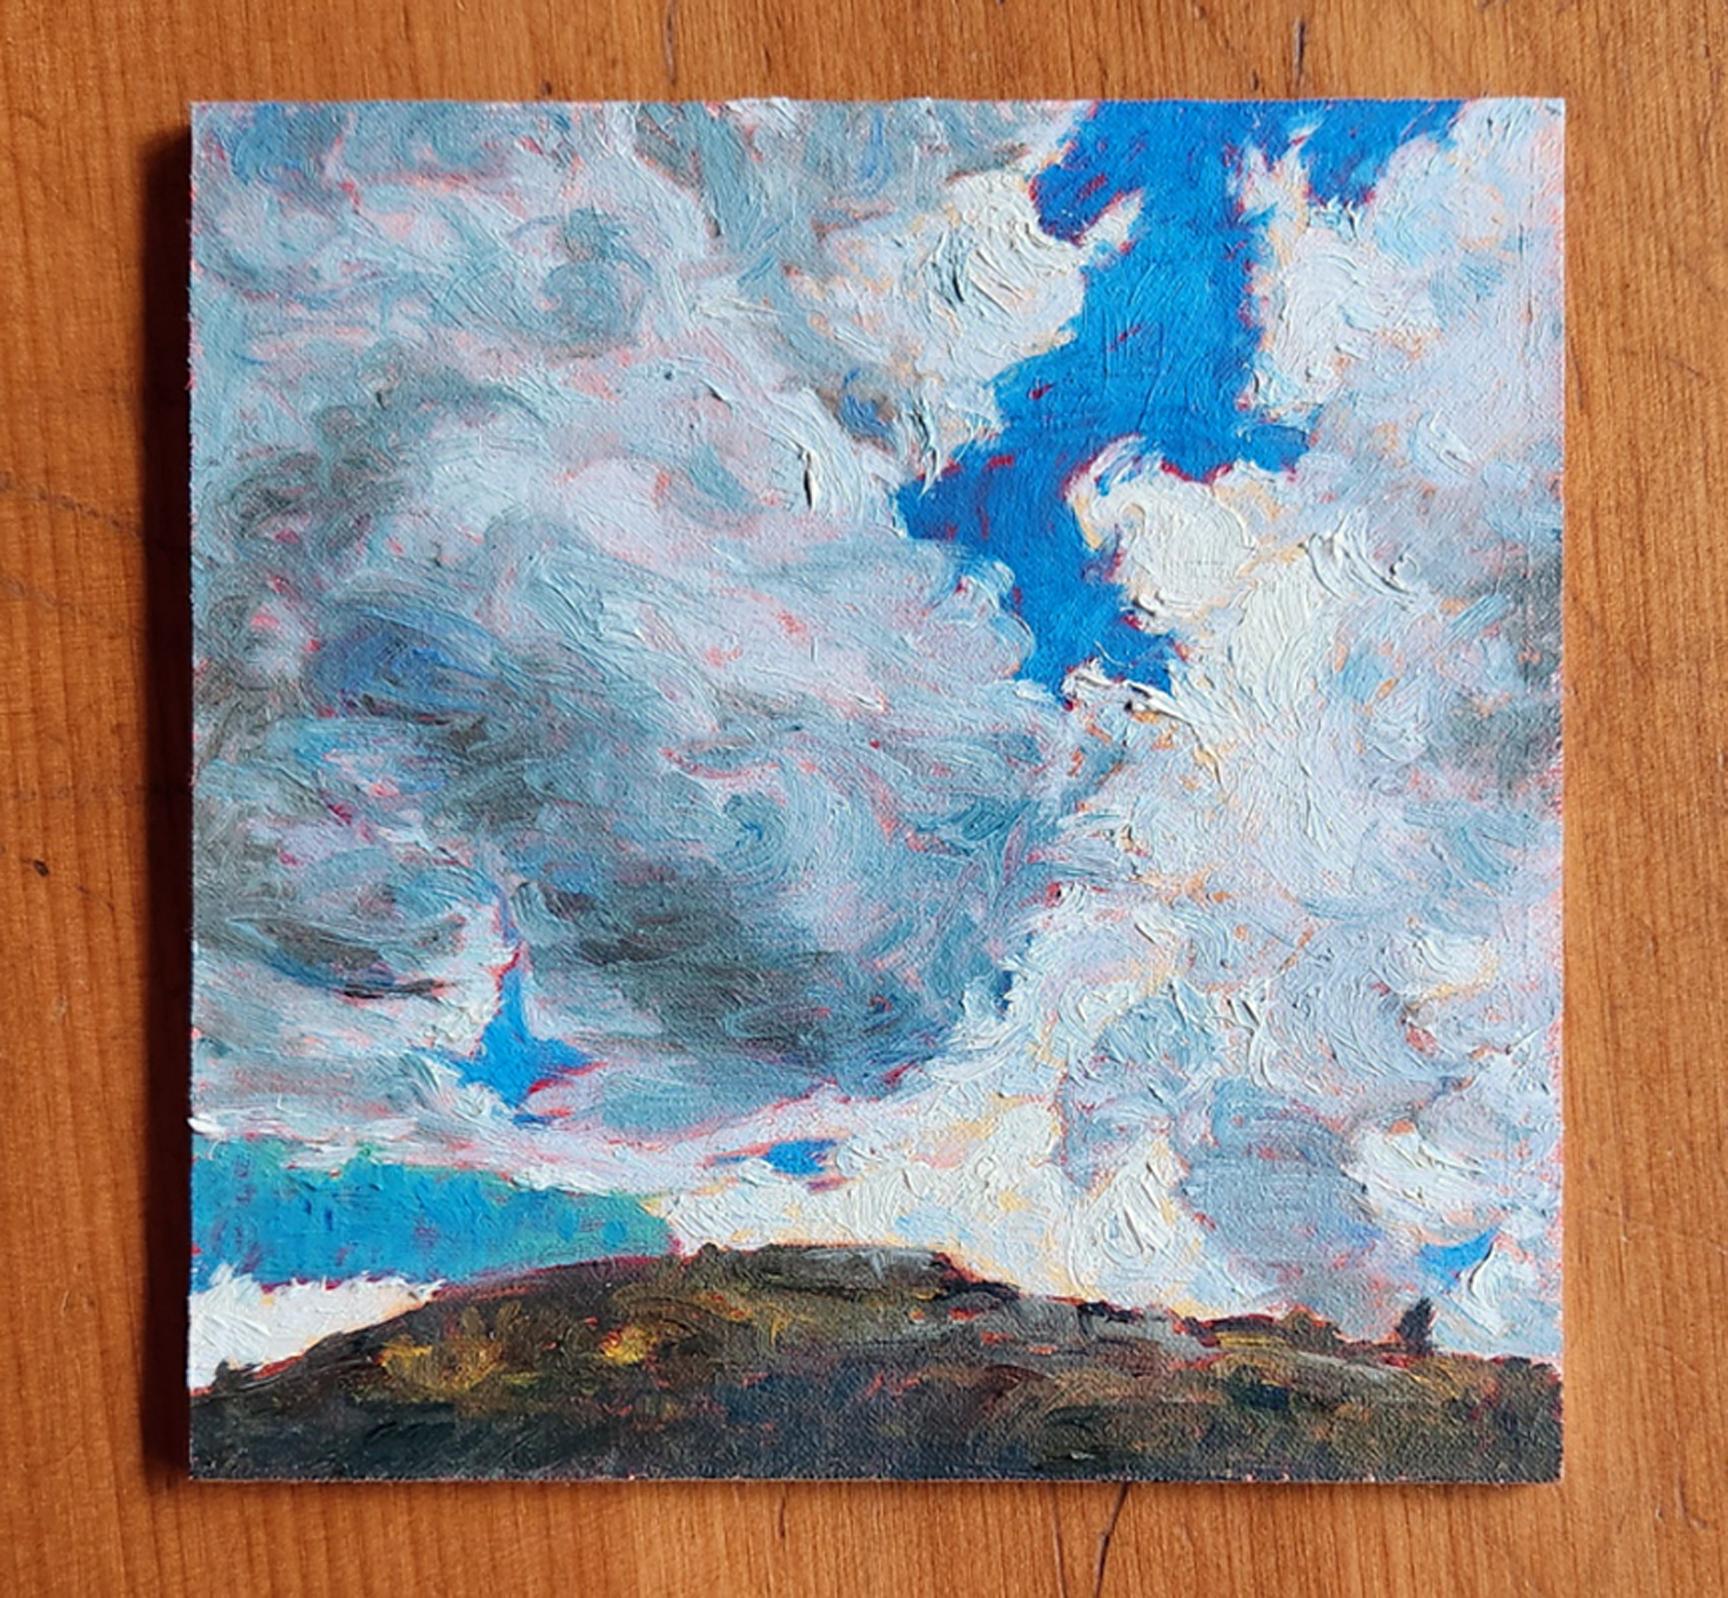 Converging Clouds - Painting by Katherine Kean